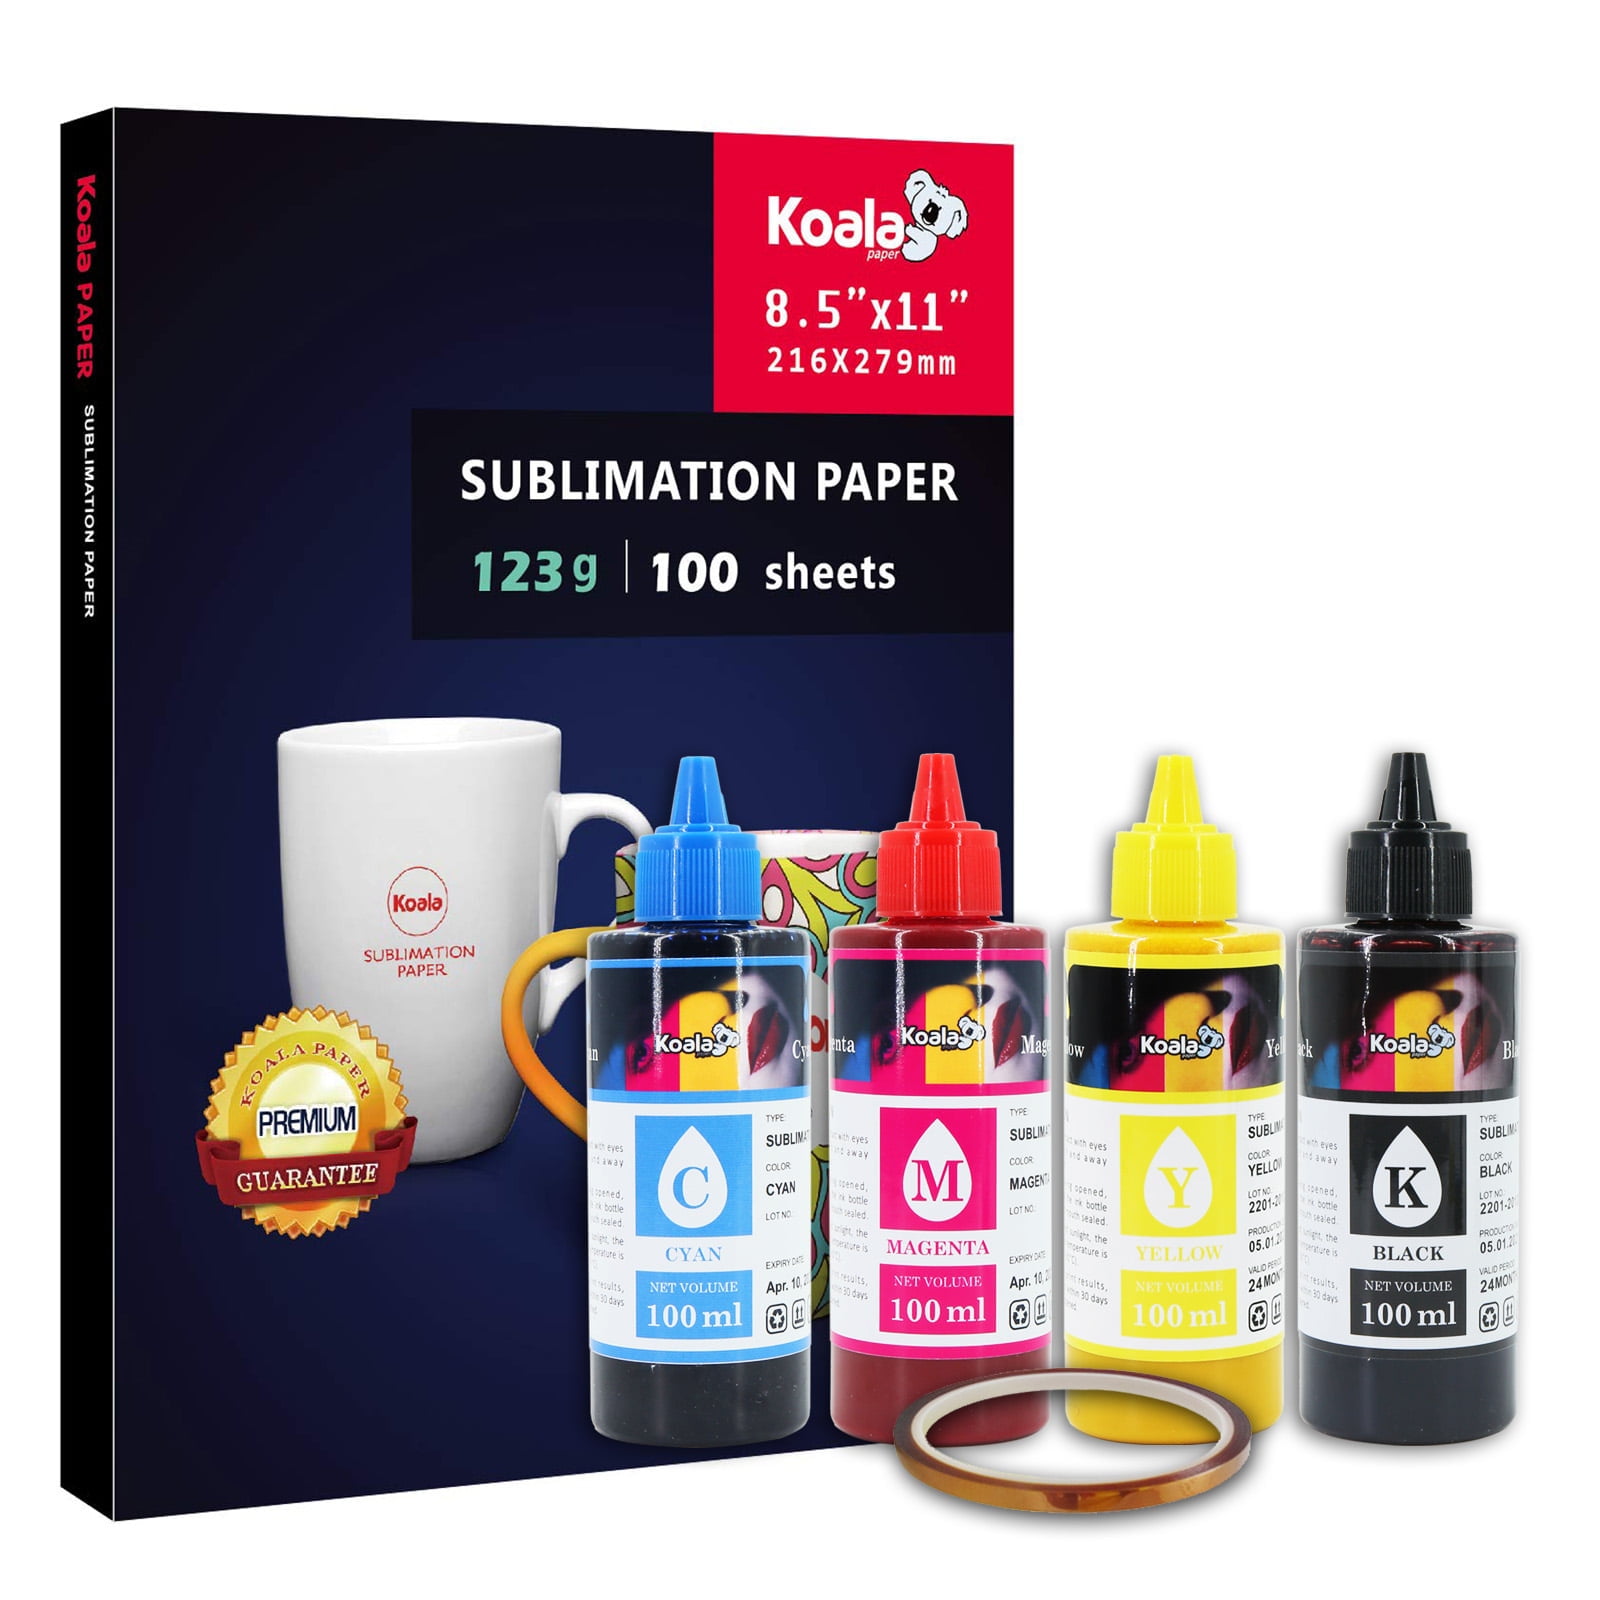 Koala Sublimation Ink for Inkjet Printer ET-2760 2720 2803 2400 WF-7710  400ML 644824538440